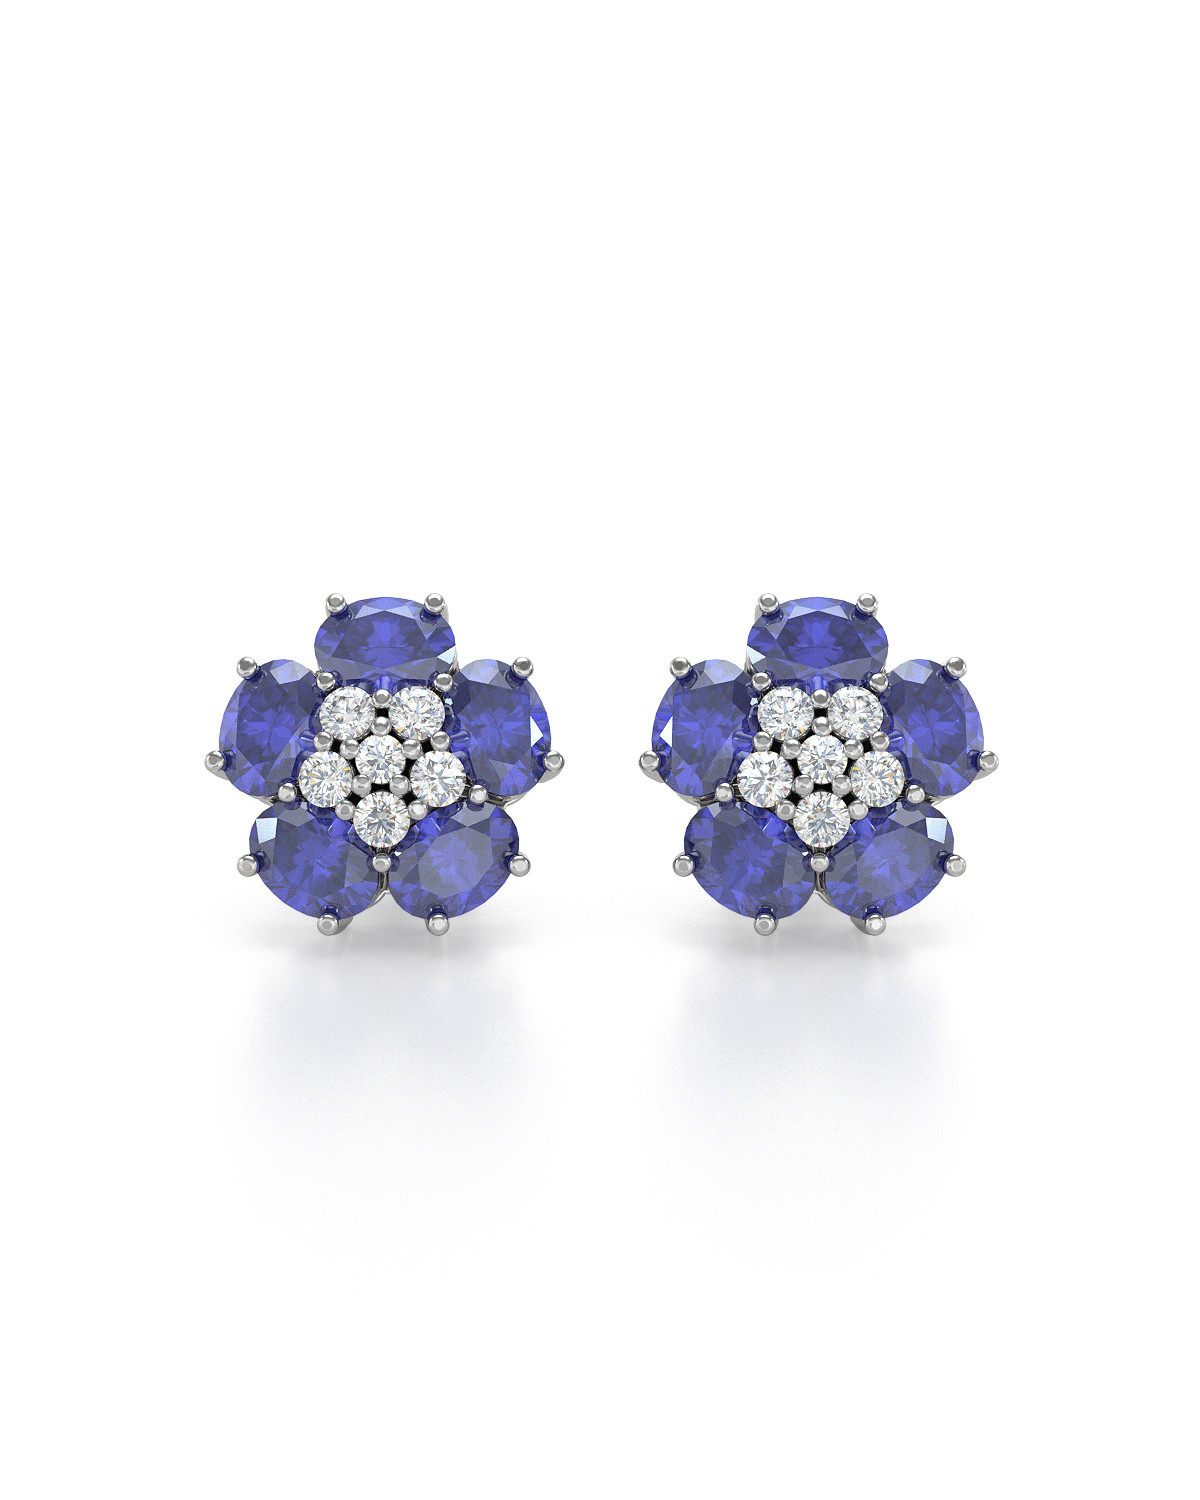 Boucles d'oreille Tanzanite Fleur et Diamants sur Argent 925 2.86grs